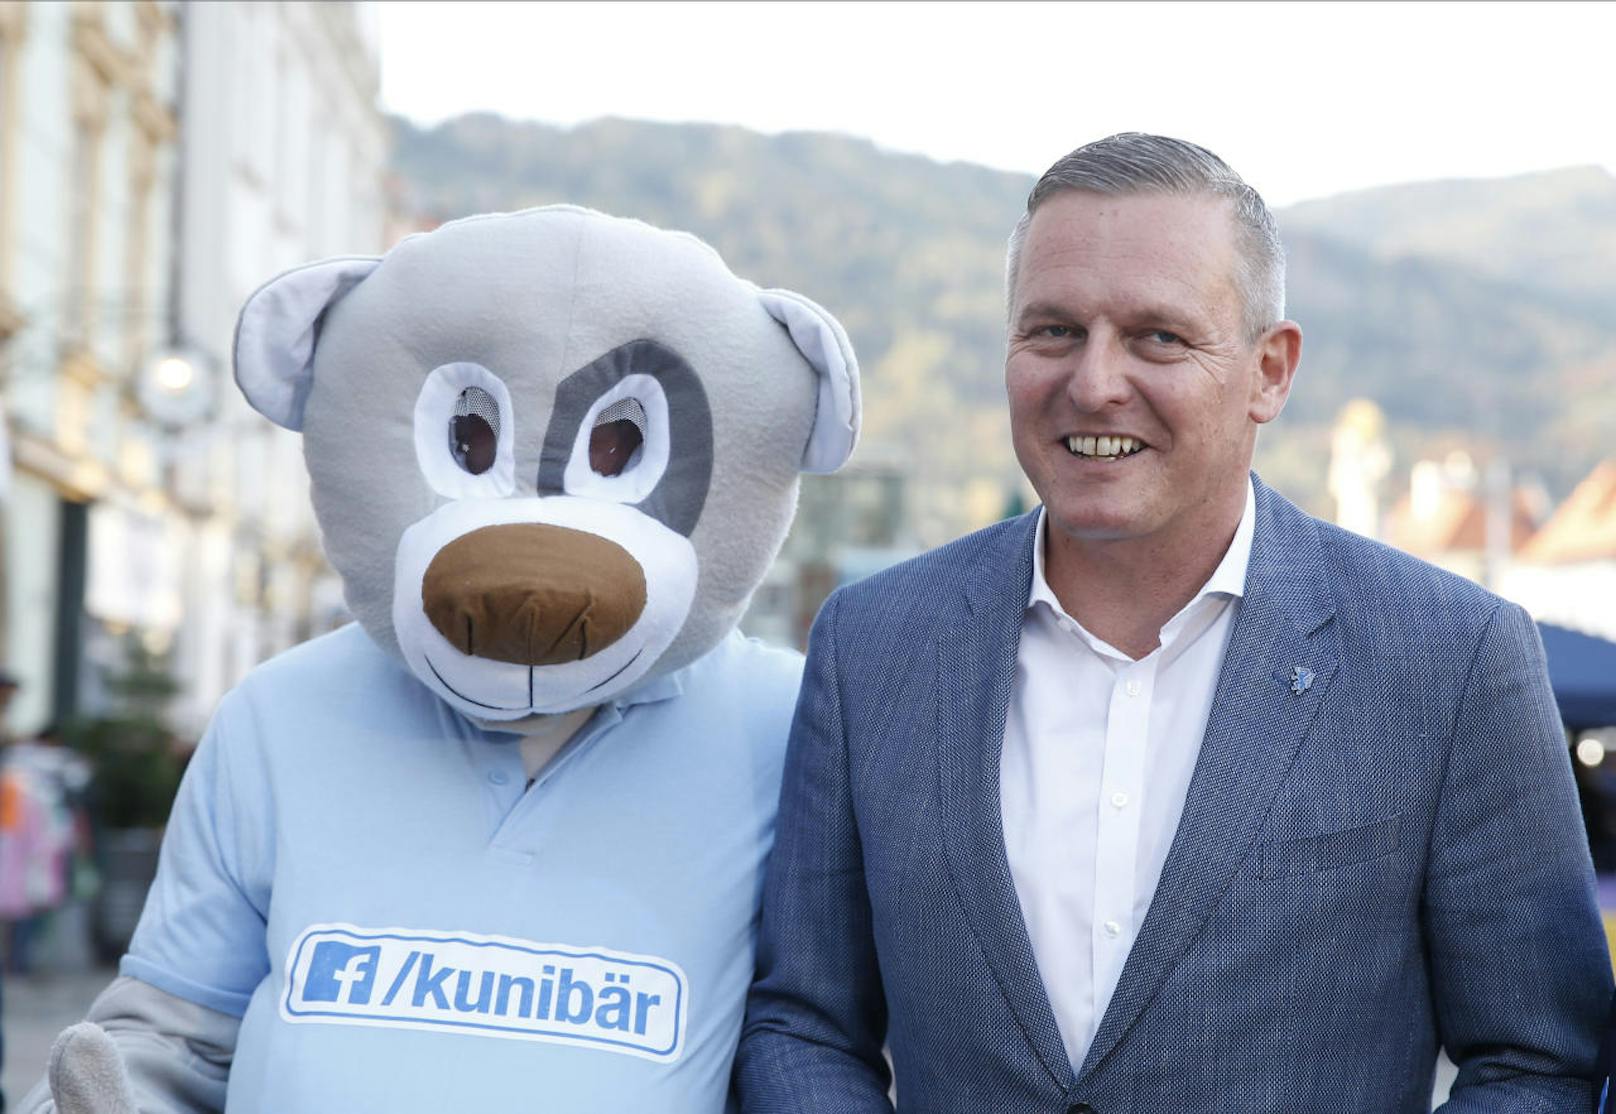 Ex-Verteidigungsminister Mario Kunasek (rechts im Bild) ist der Spitzenkandidat der FPÖ. Hier mit seinem Maskottchen, dem "Kunibär".